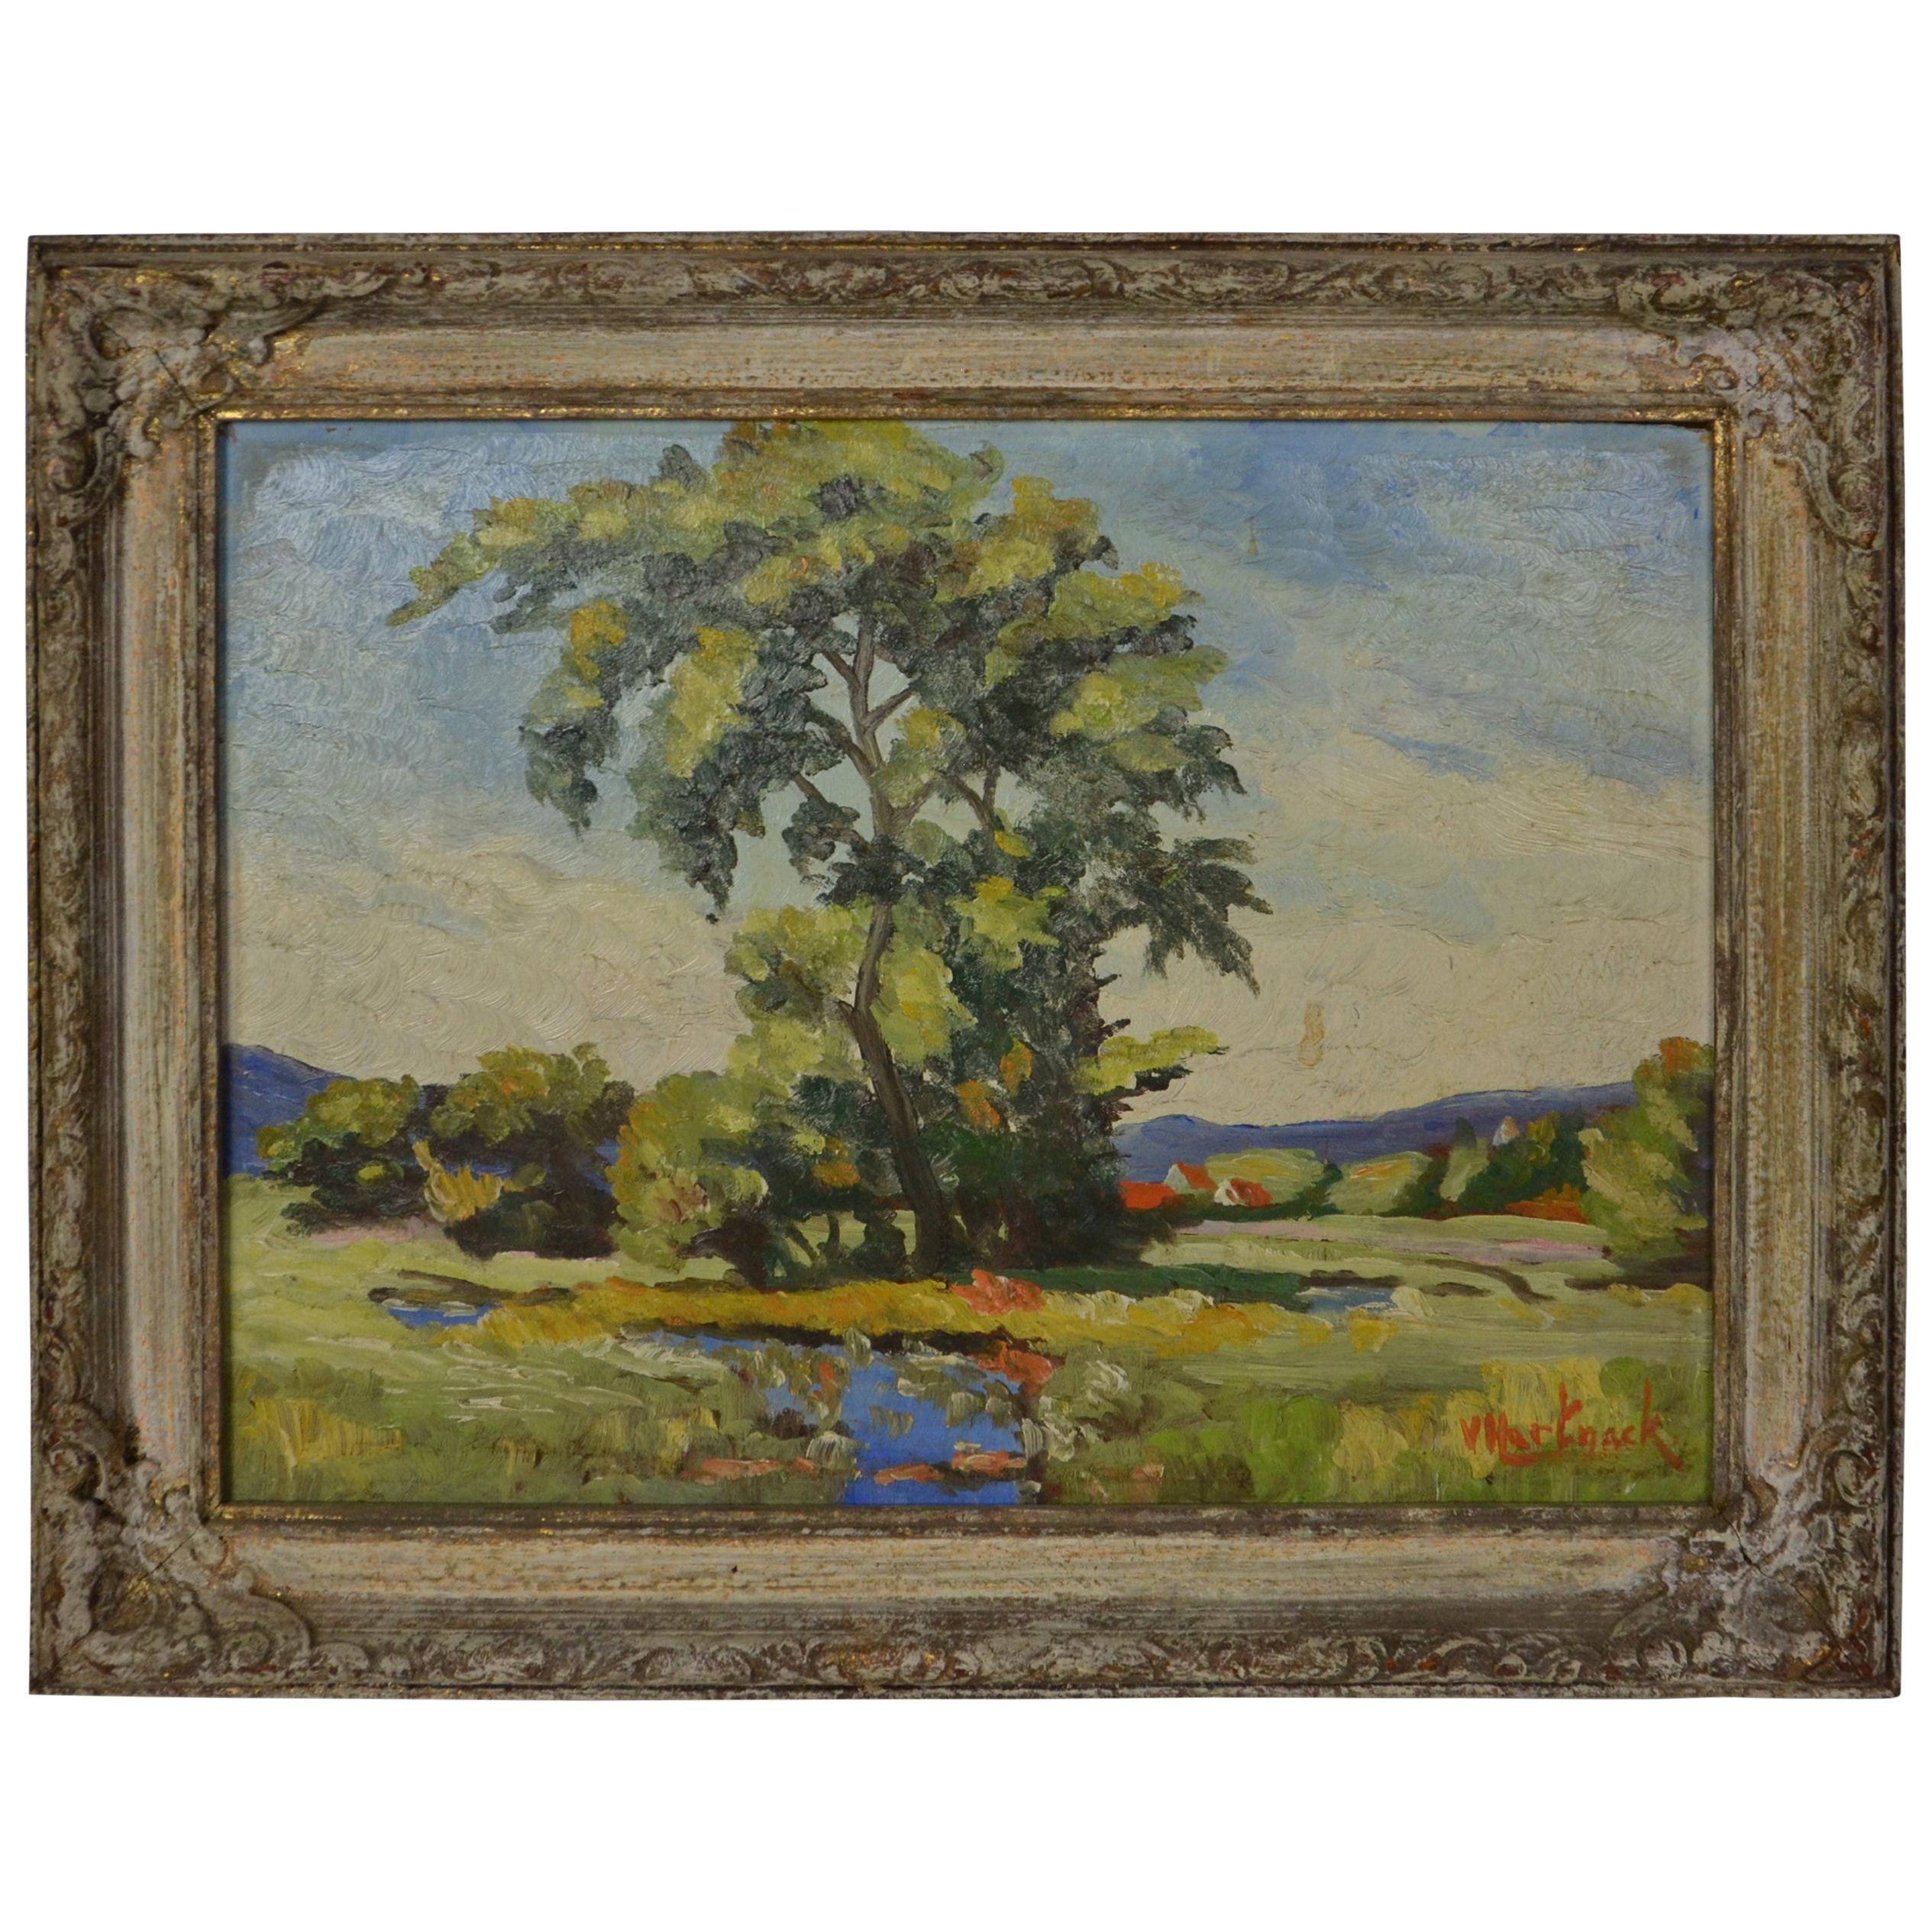 Landscape Painting, Signed v. Hartnack by Valdemar Hartmack 1895-1969